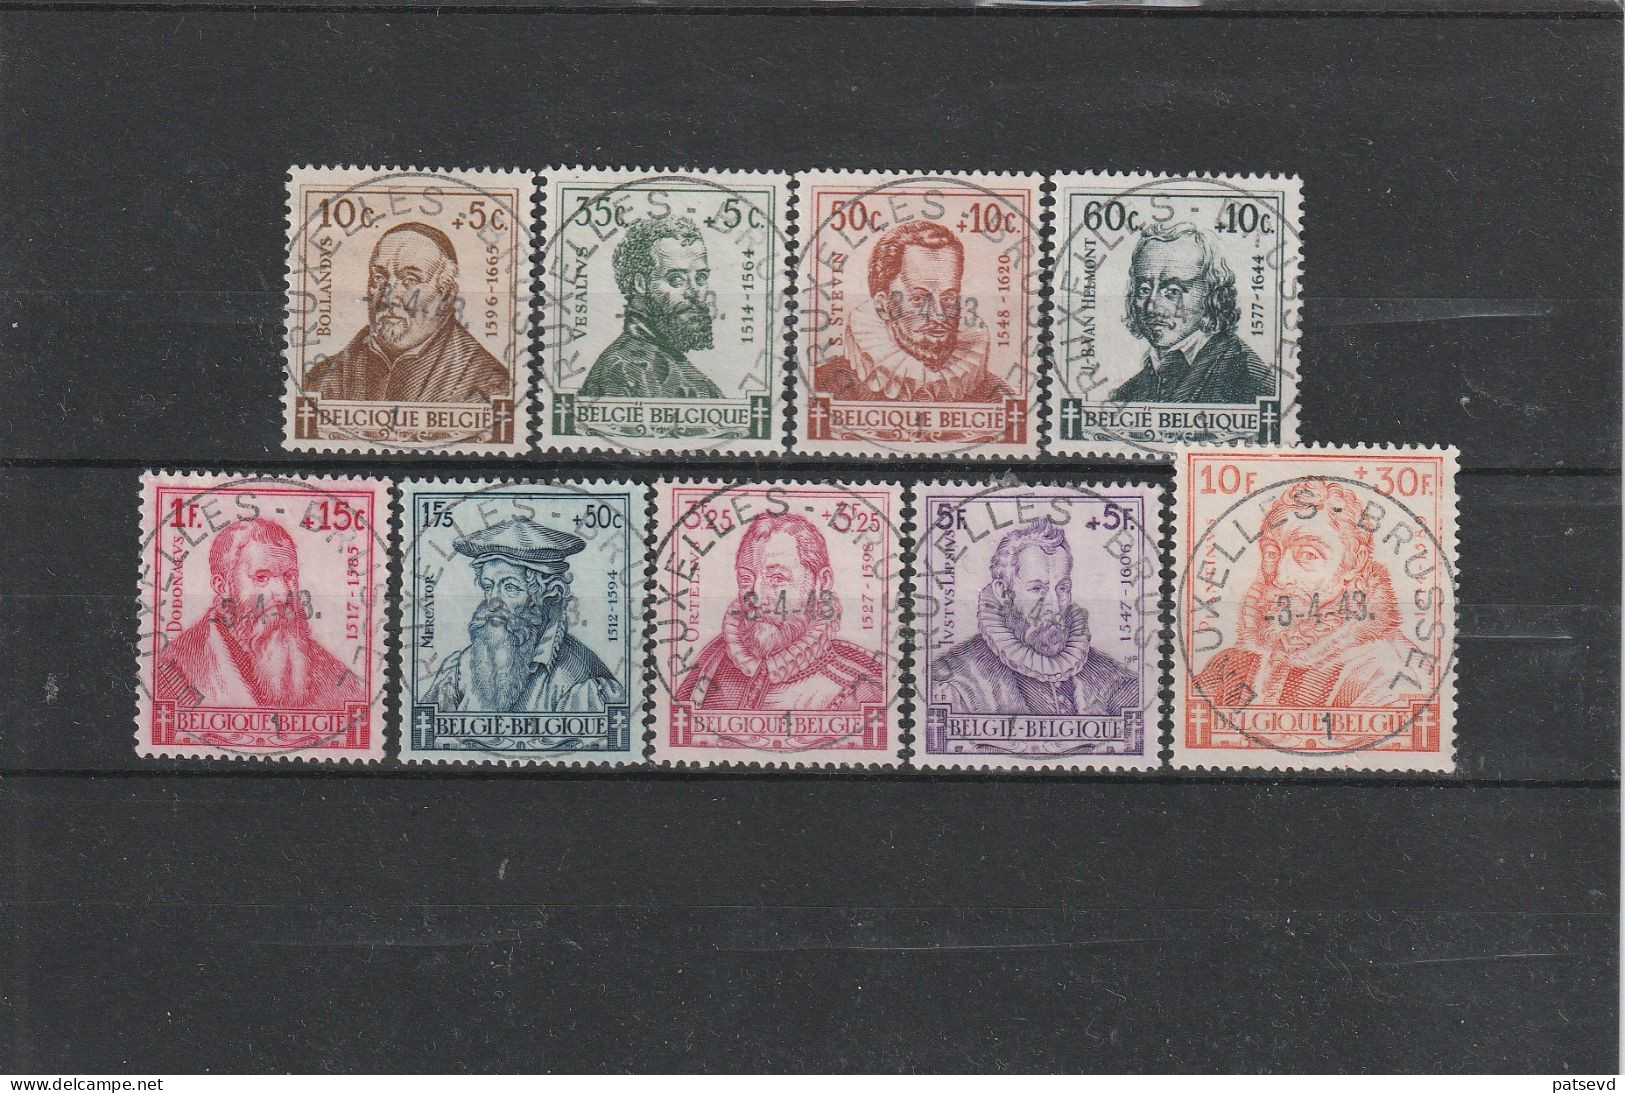 593/601 Les Savants/Vlaamse Geleerden Oblit/gestp Centrale - Used Stamps